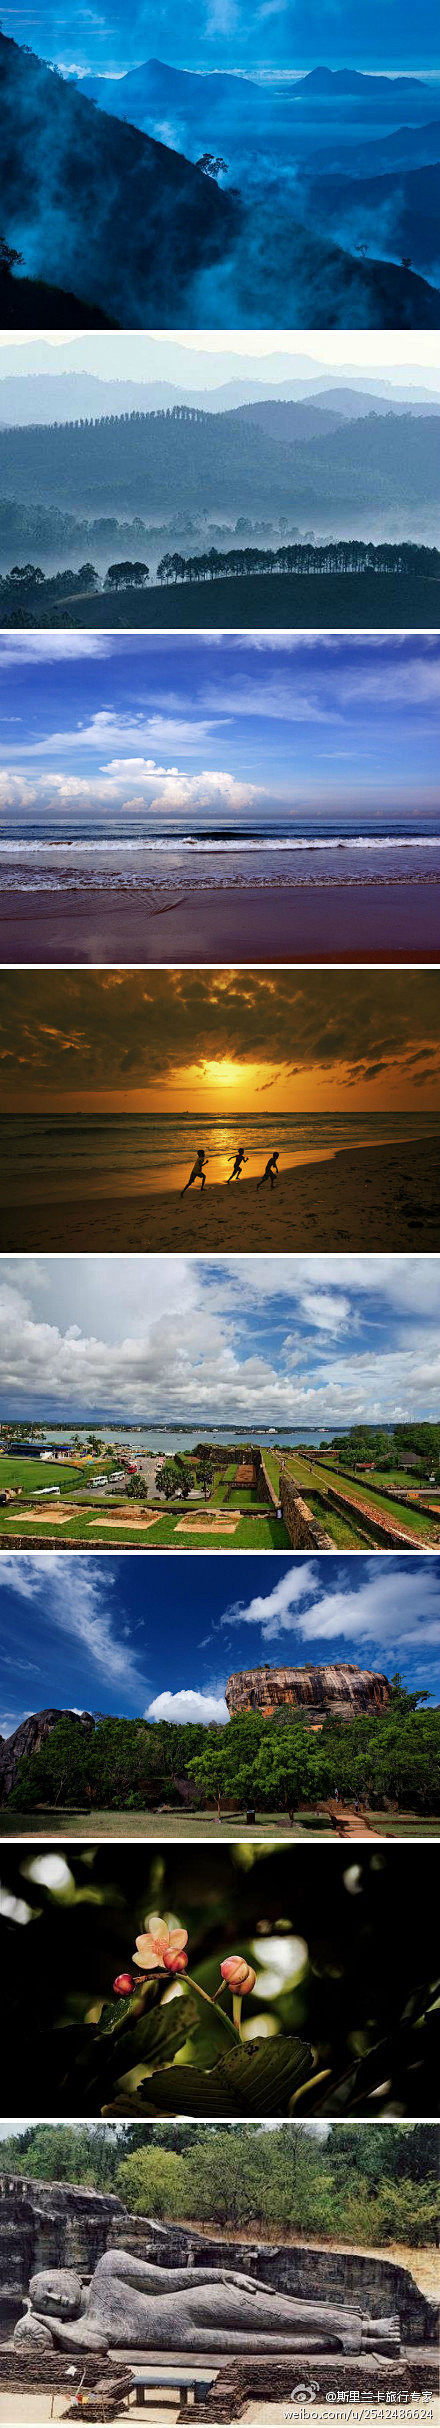 [岛国斯里兰卡] 斯里兰卡旅行专家 ： ...